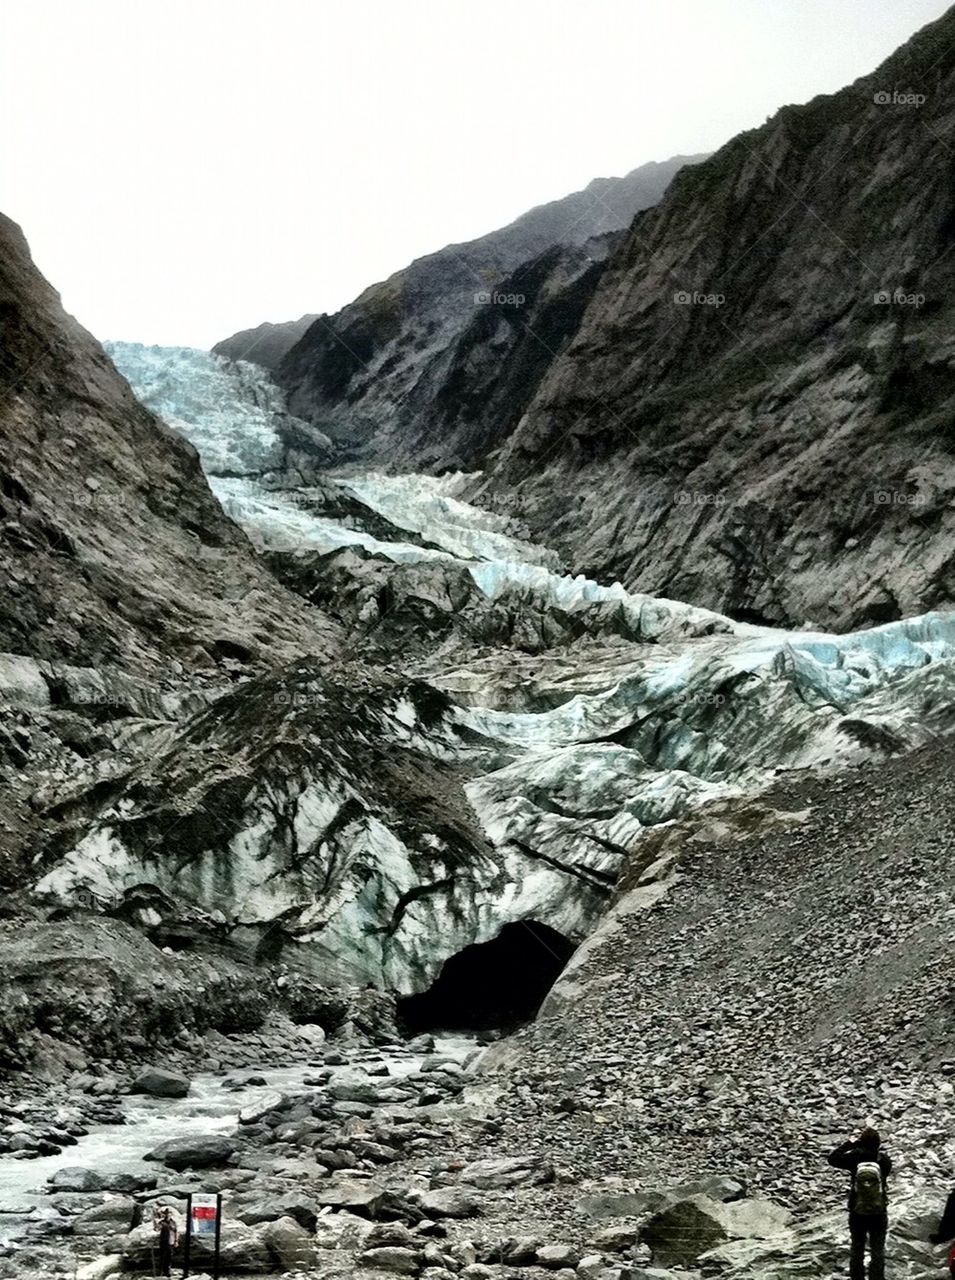 Icy Franz Josef Glacier, New Zealand